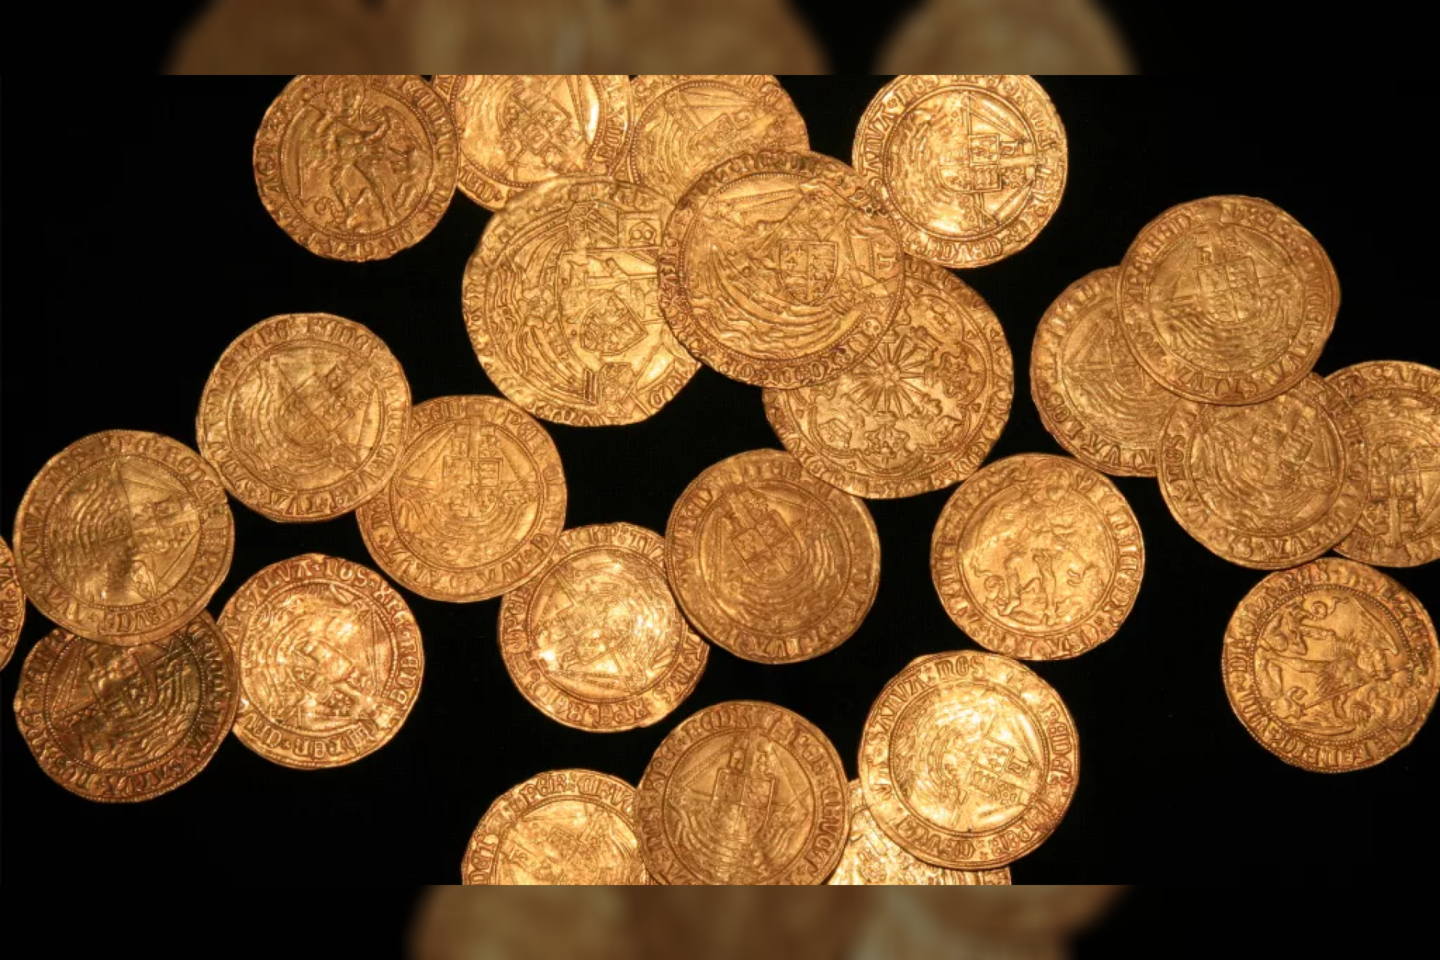  Lobį sudaro 63 auksinės ir viena sidabrinė monetos. Tai pinigai, nukaldinti per beveik 100 metų laikotarpį: nuo XV a. pabaigos iki XVI a.<br> Britų muziejaus / PAS nuotr.